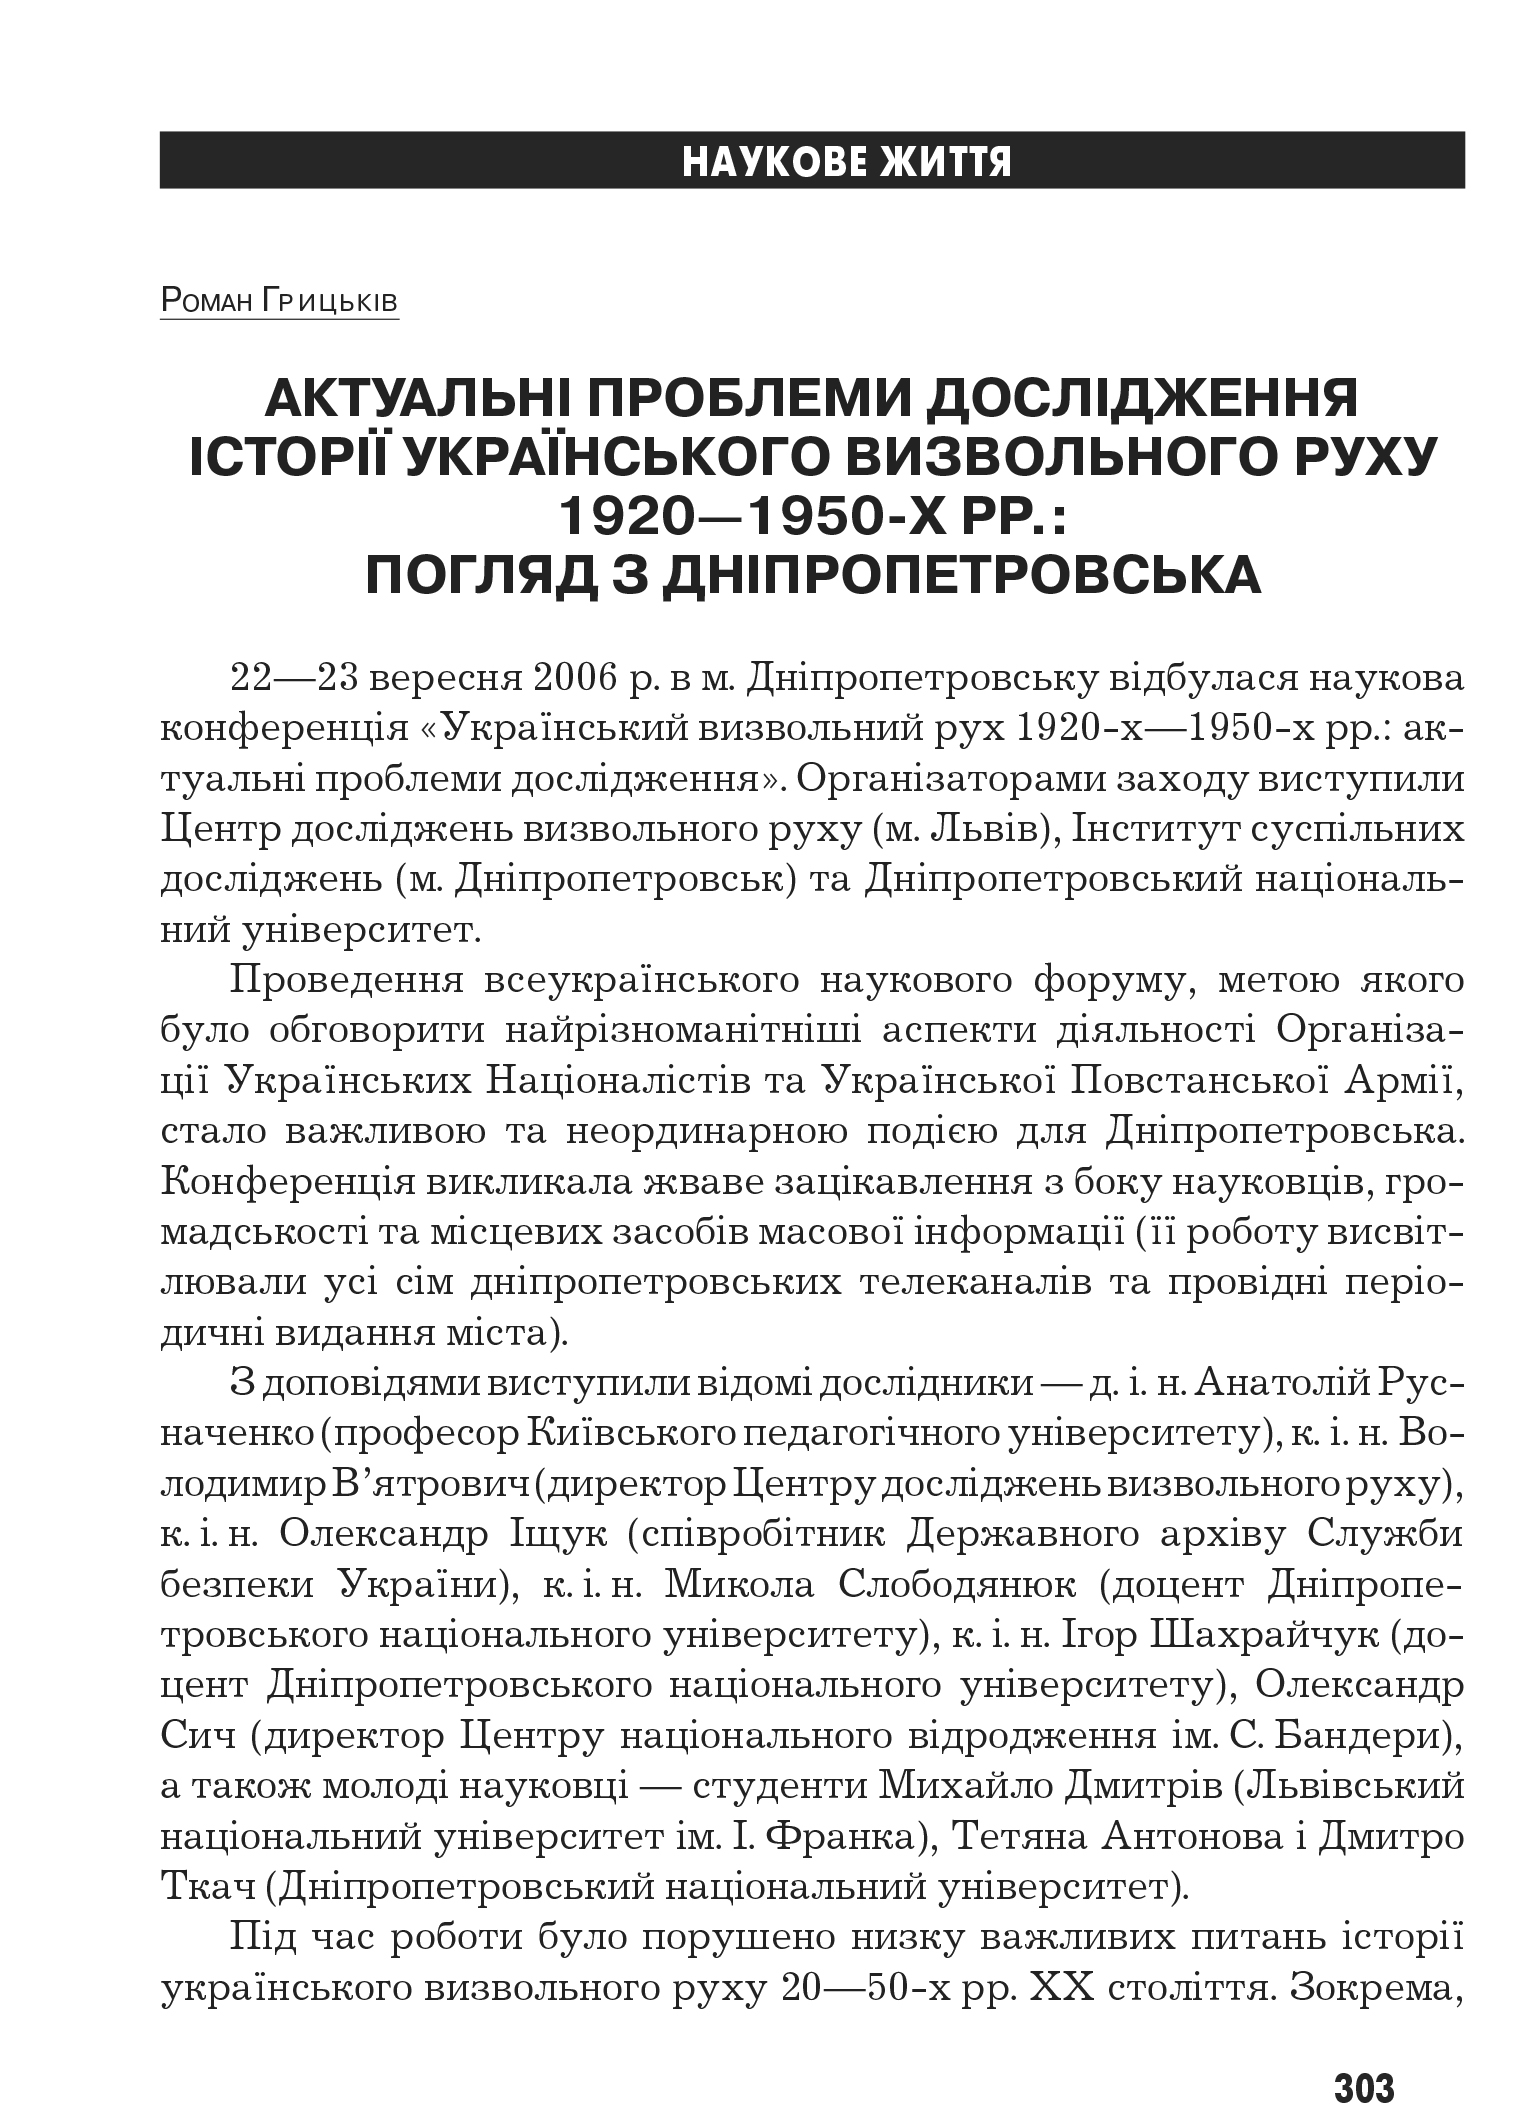 Український визвольний рух №8, ст. 303 - 306